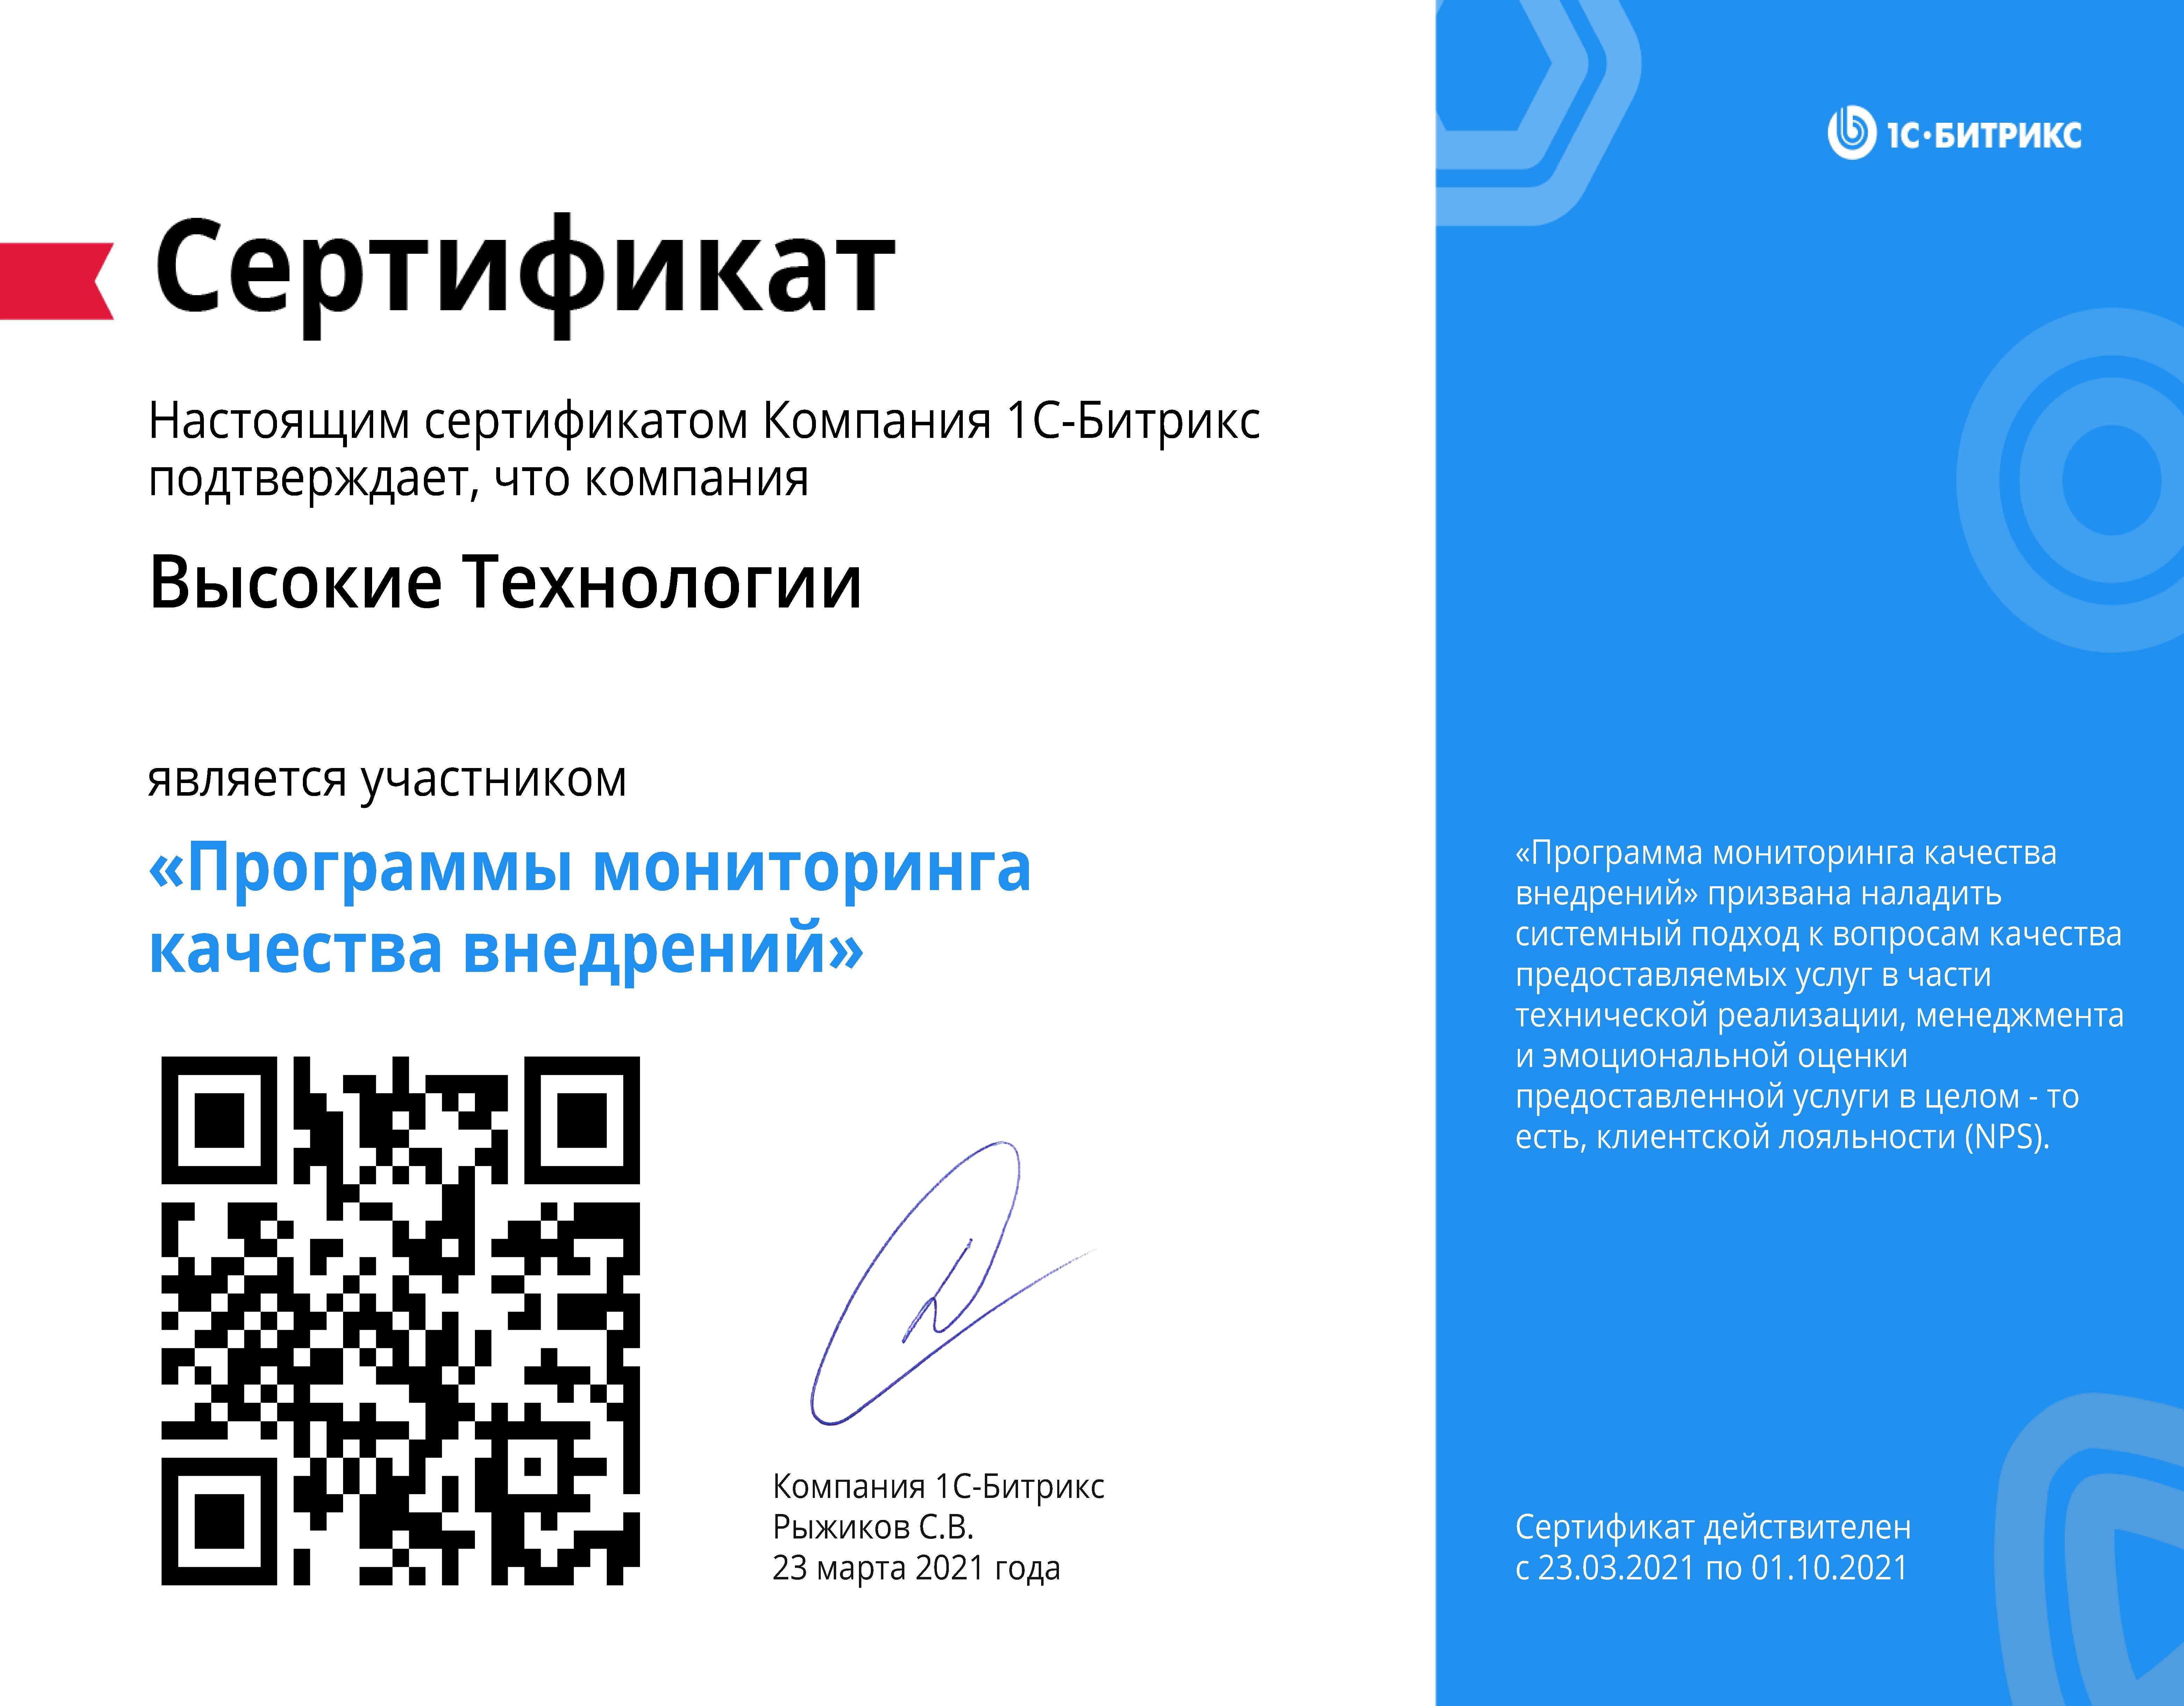 Сертификат мониторинг качества внедрений Битрикс